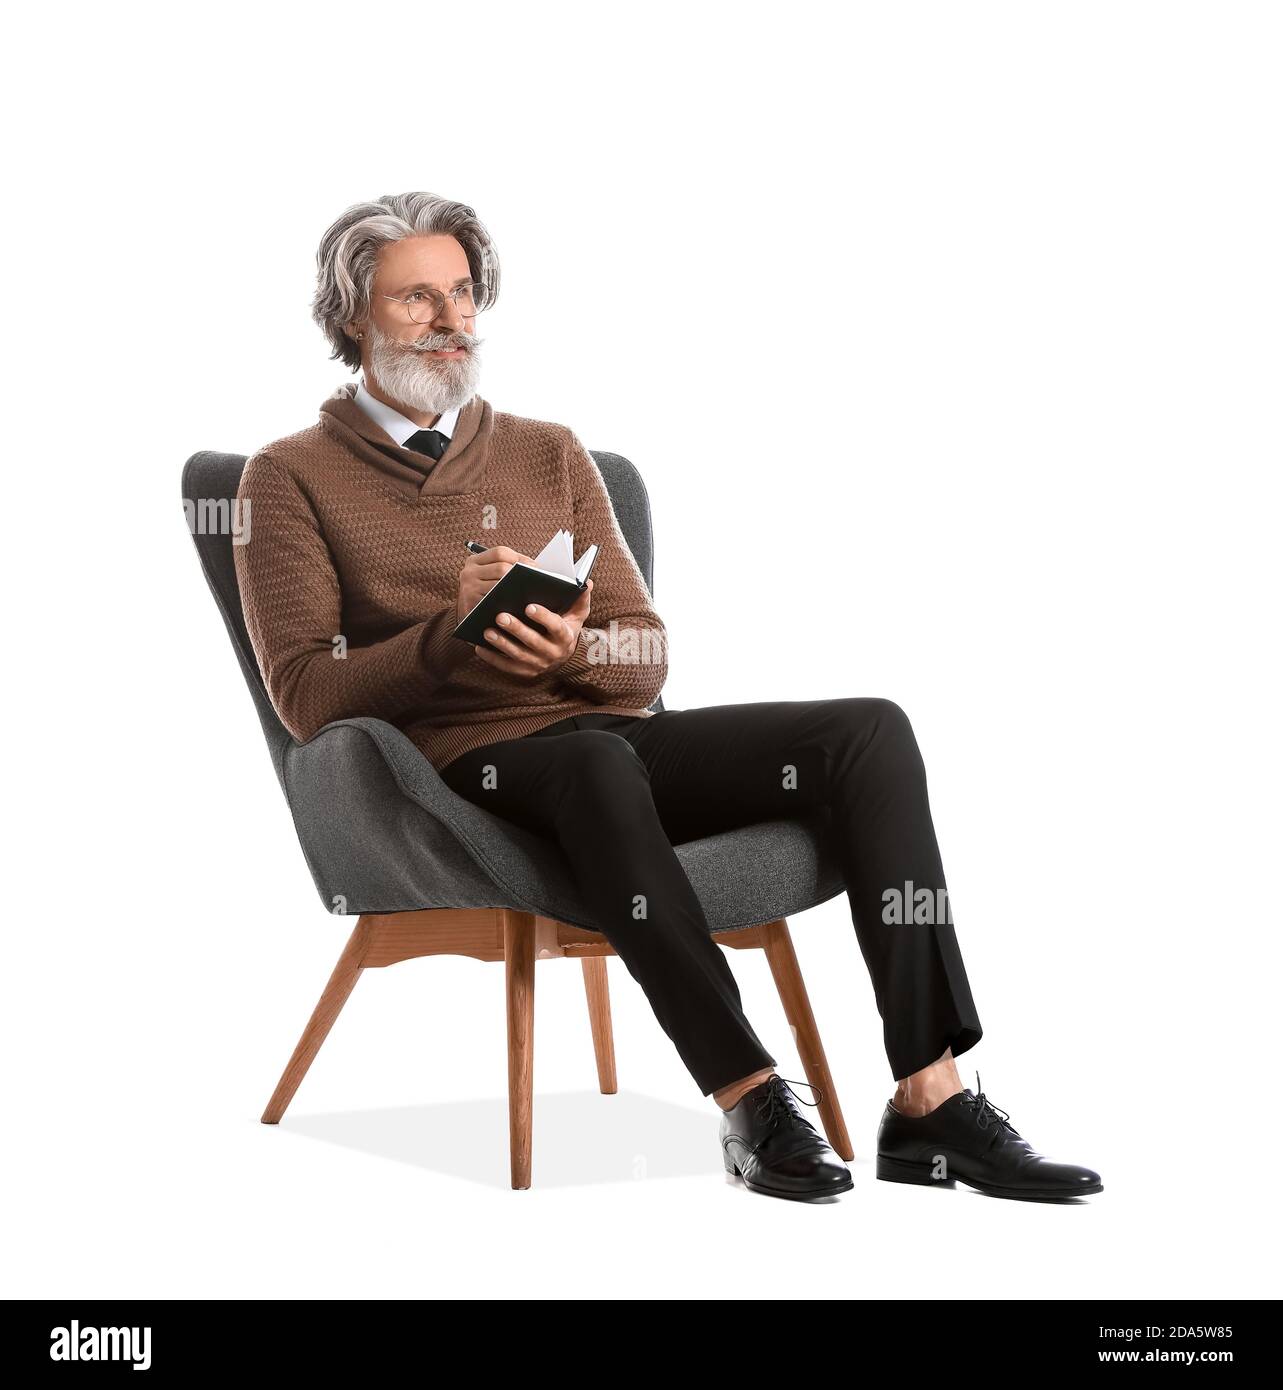 Psicólogo mayor sentado en el sillón contra fondo blanco Fotografía de  stock - Alamy